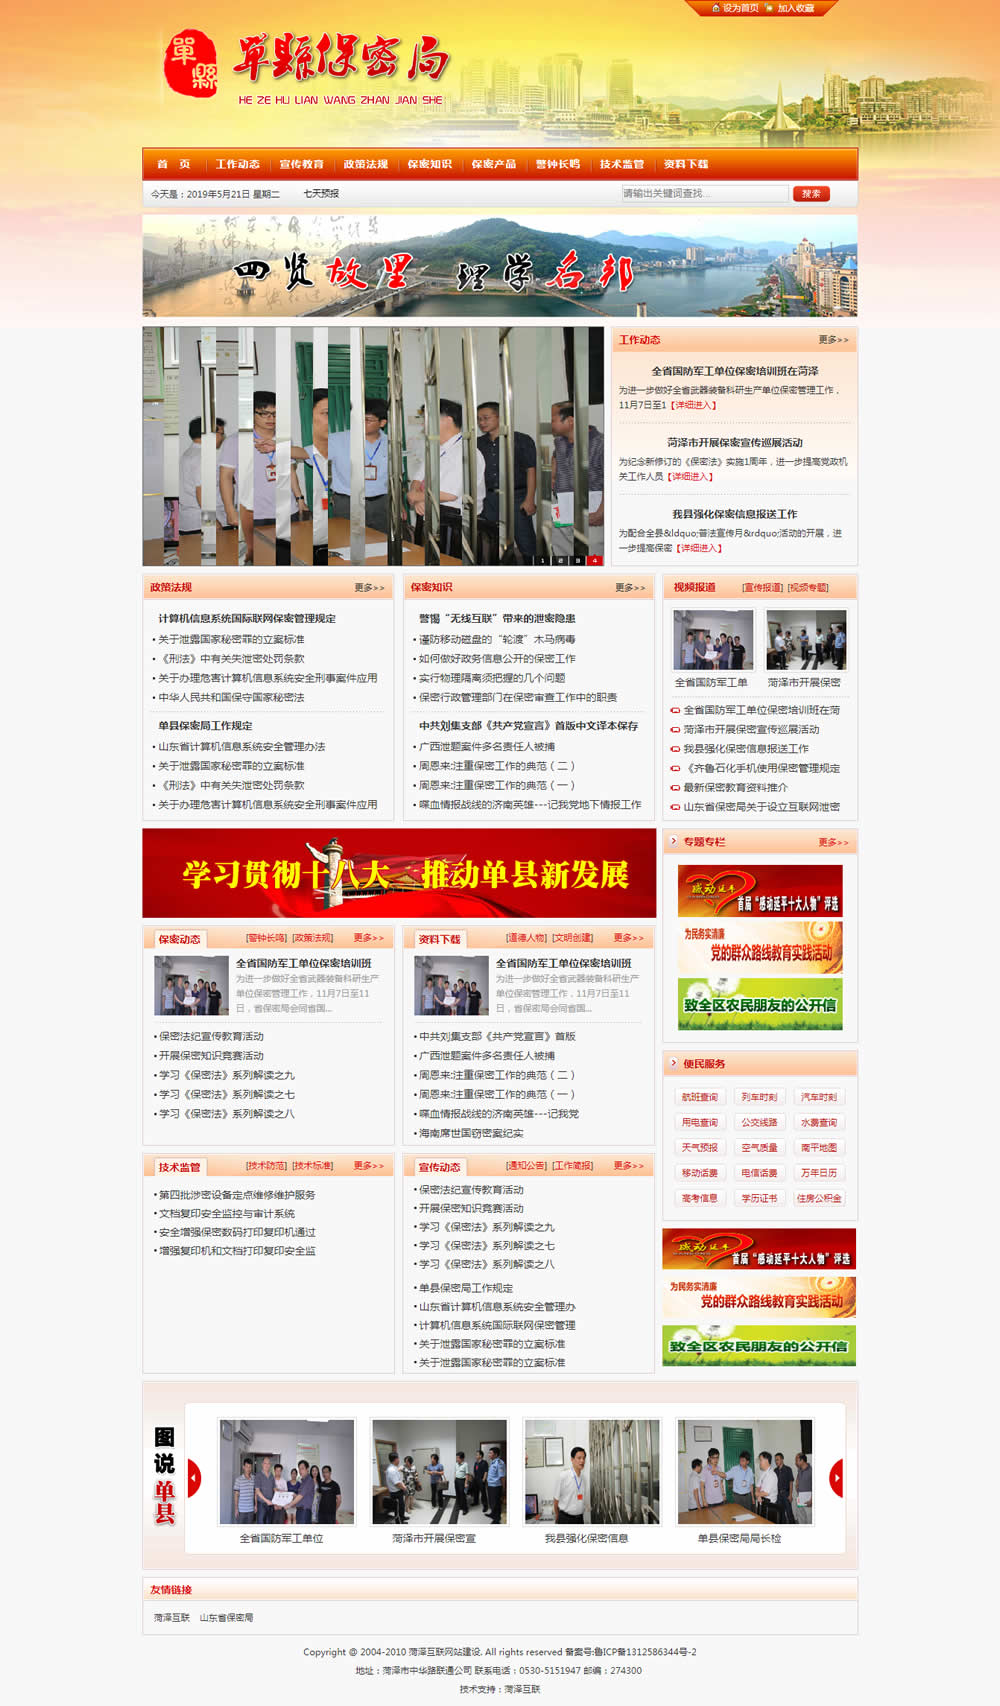 菏泽红色政府保密局协会事业单位网站建设